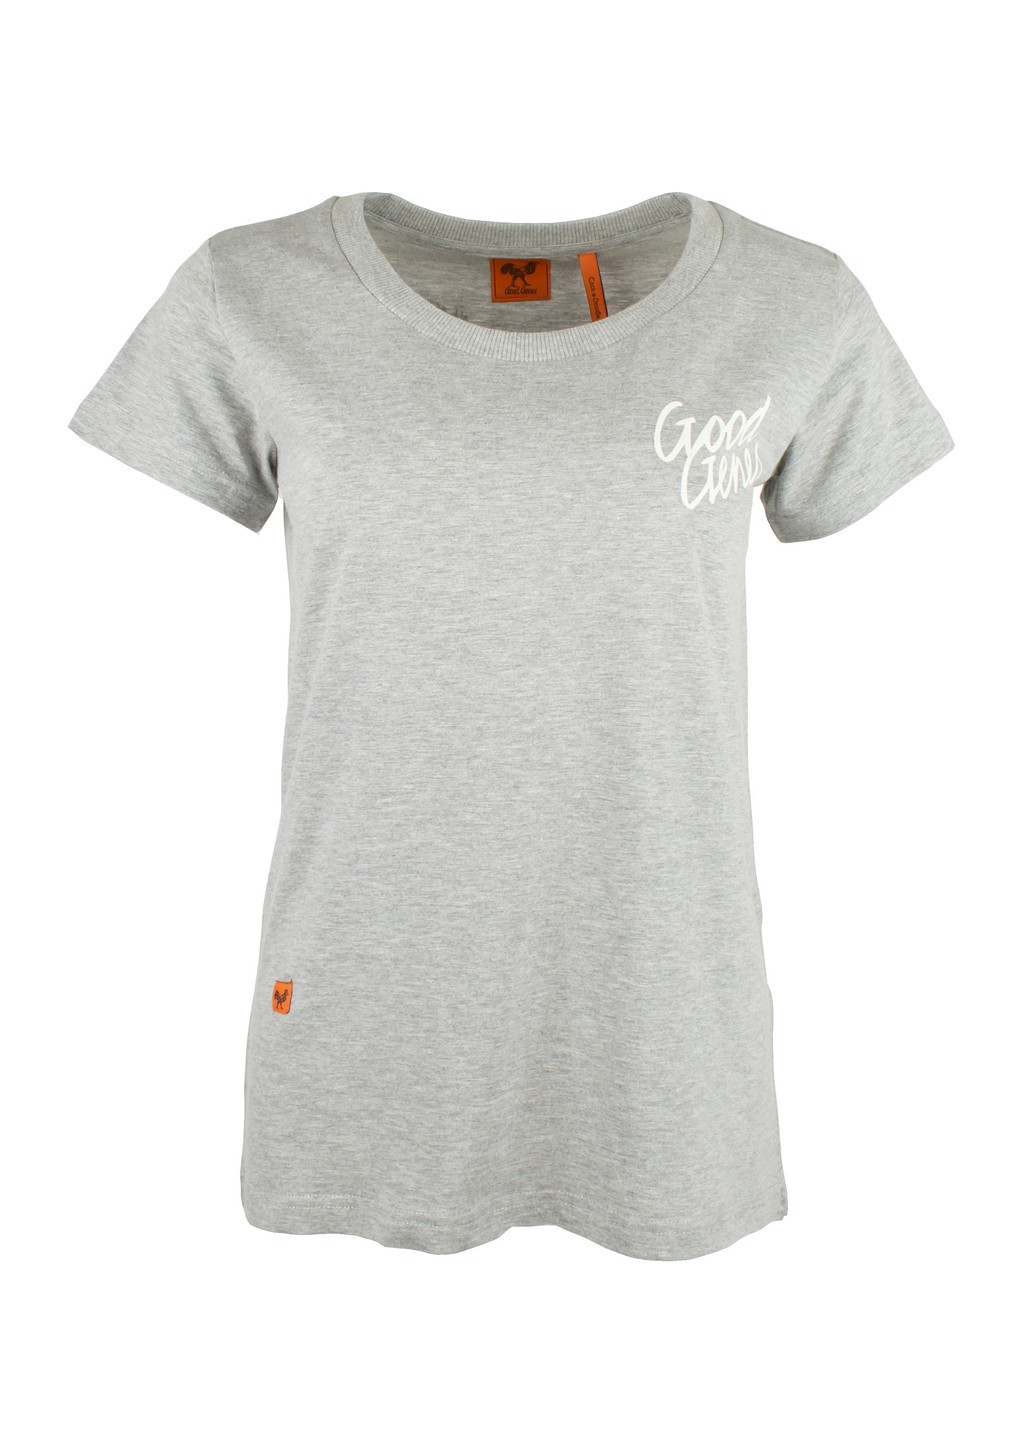 Сіра літня футболка жіноча сіра 011220-001992 Good Genes